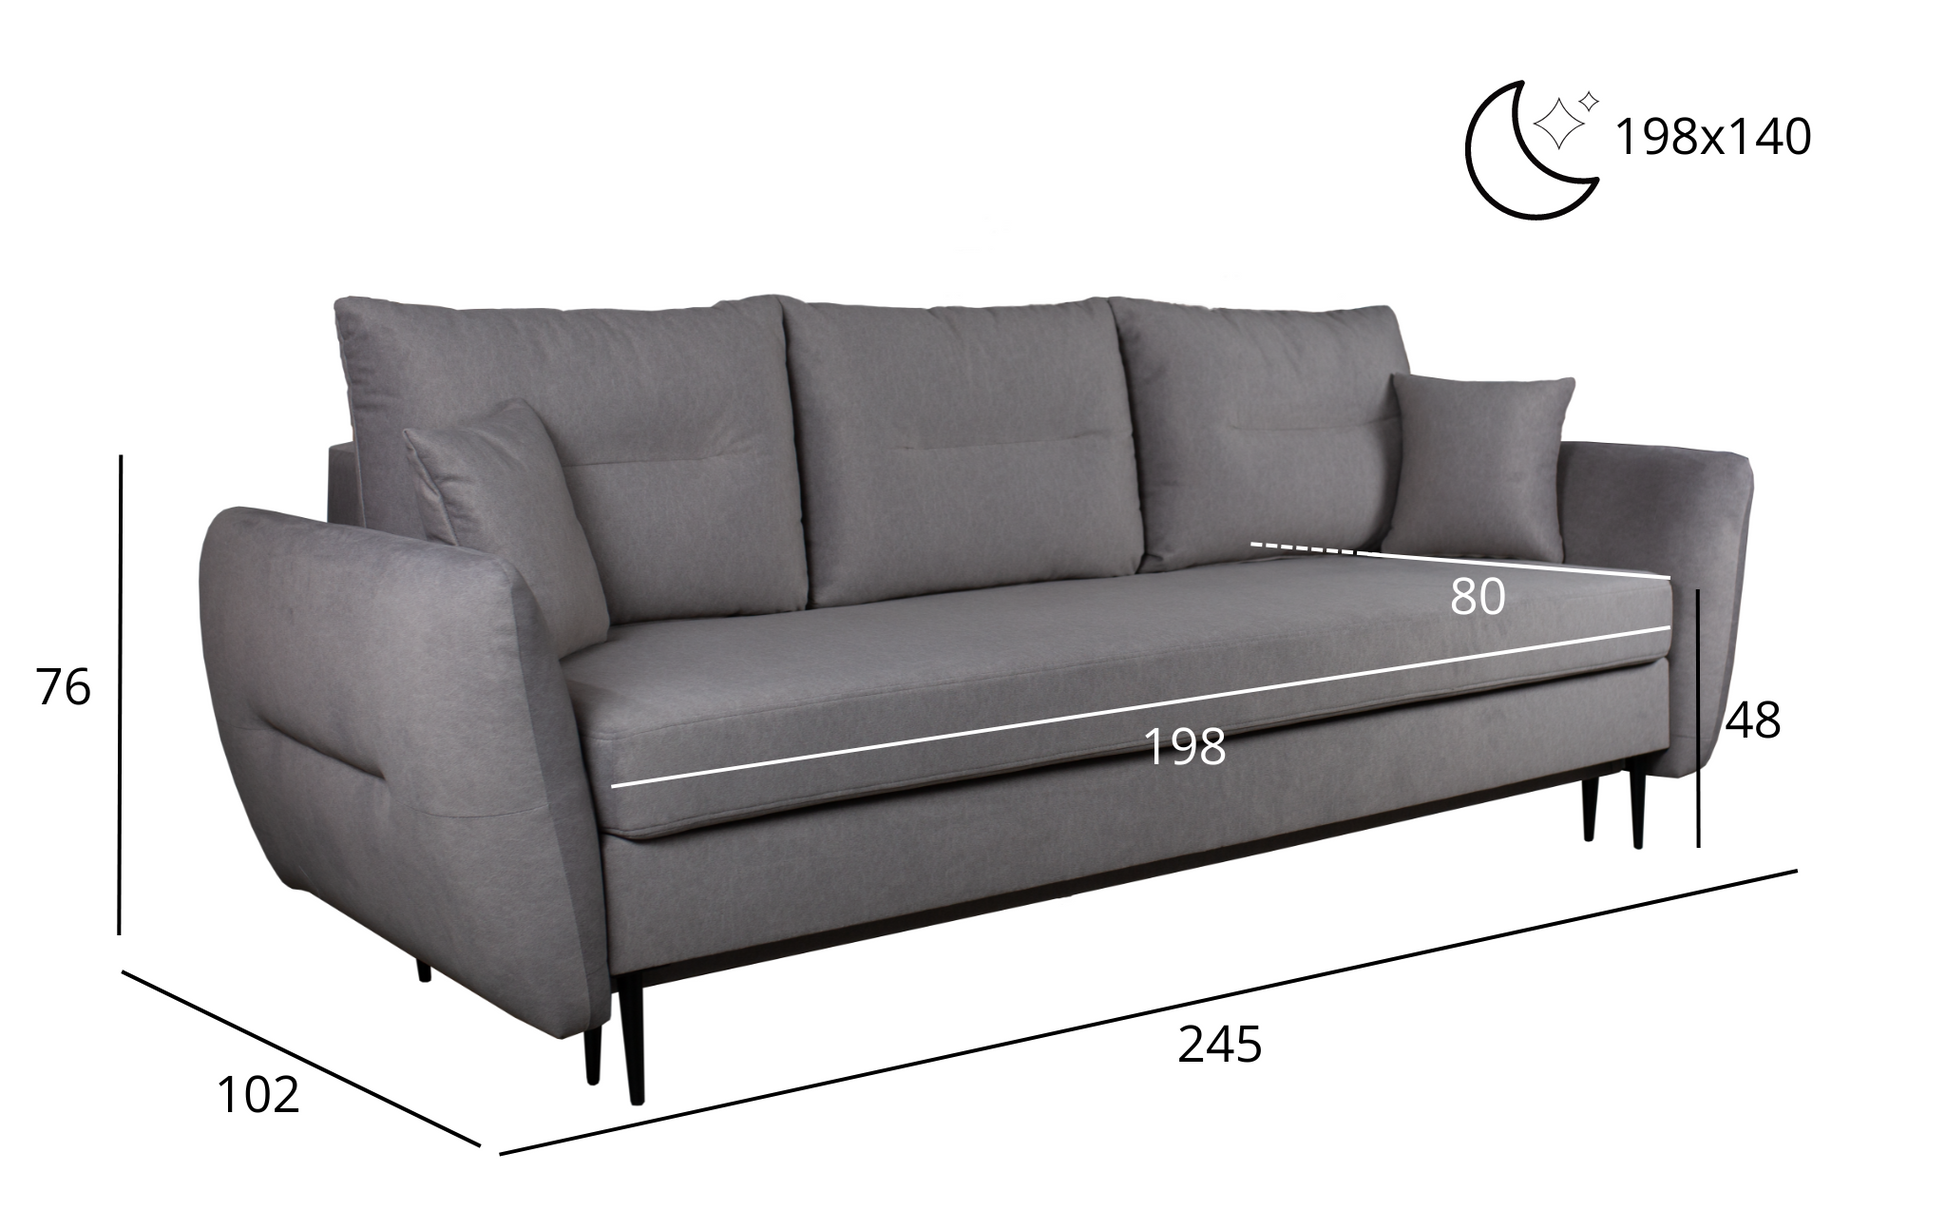 Zdjęcie przedstawiające rozmiary nowoczesnej kanapy rozkładanej Ingrid wykonanej w skandynawskim stylu.